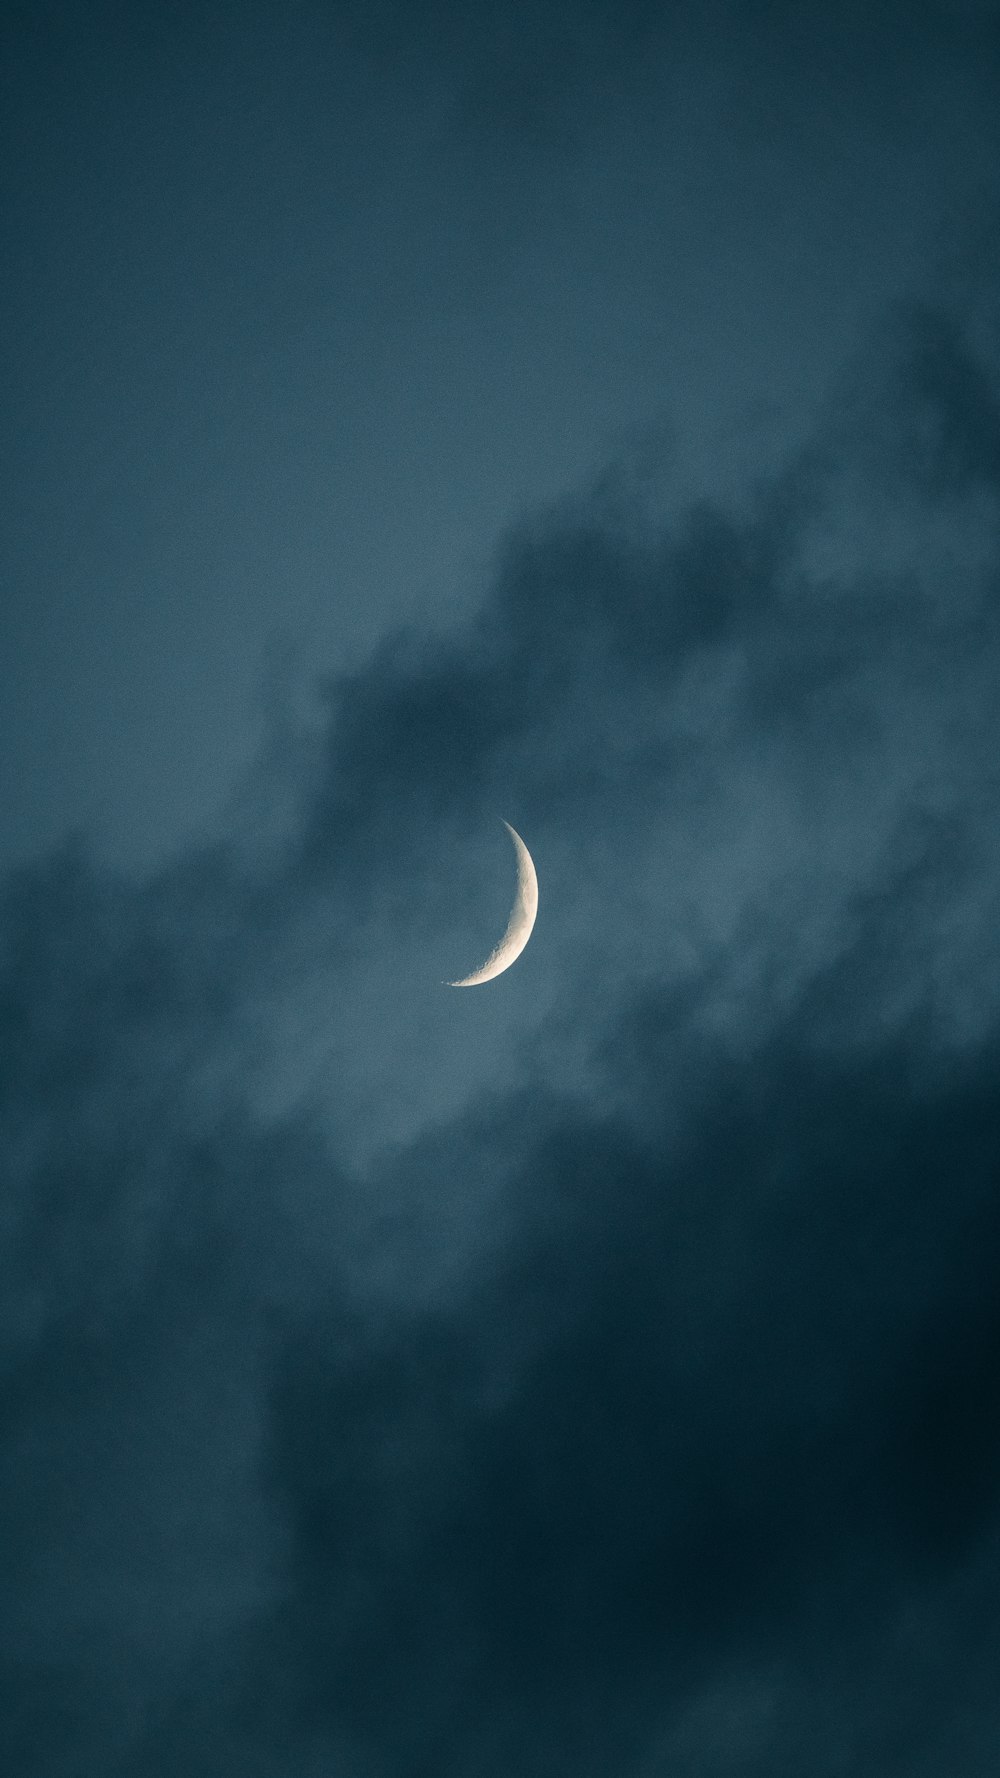 Foto Media luna en el cielo – Imagen Gris gratis en Unsplash